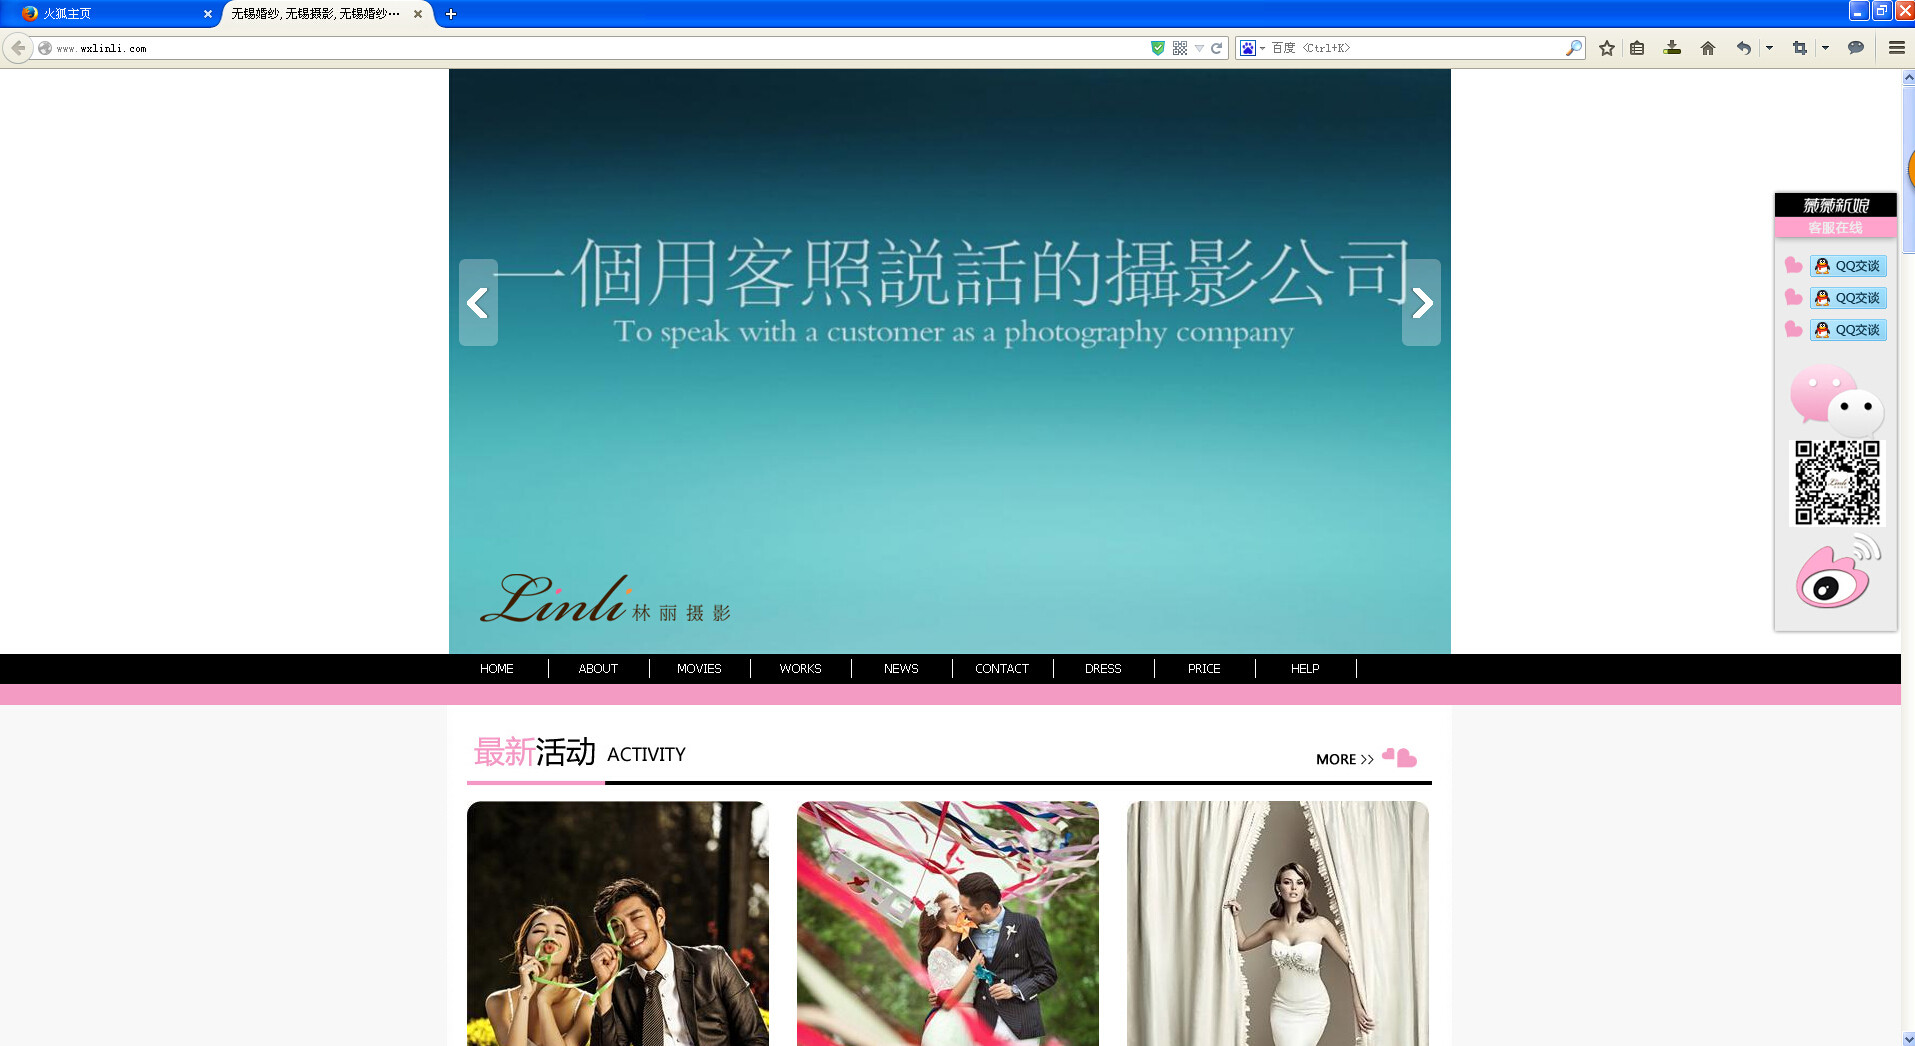 企业官网运营案例：无锡婚纱摄影公司